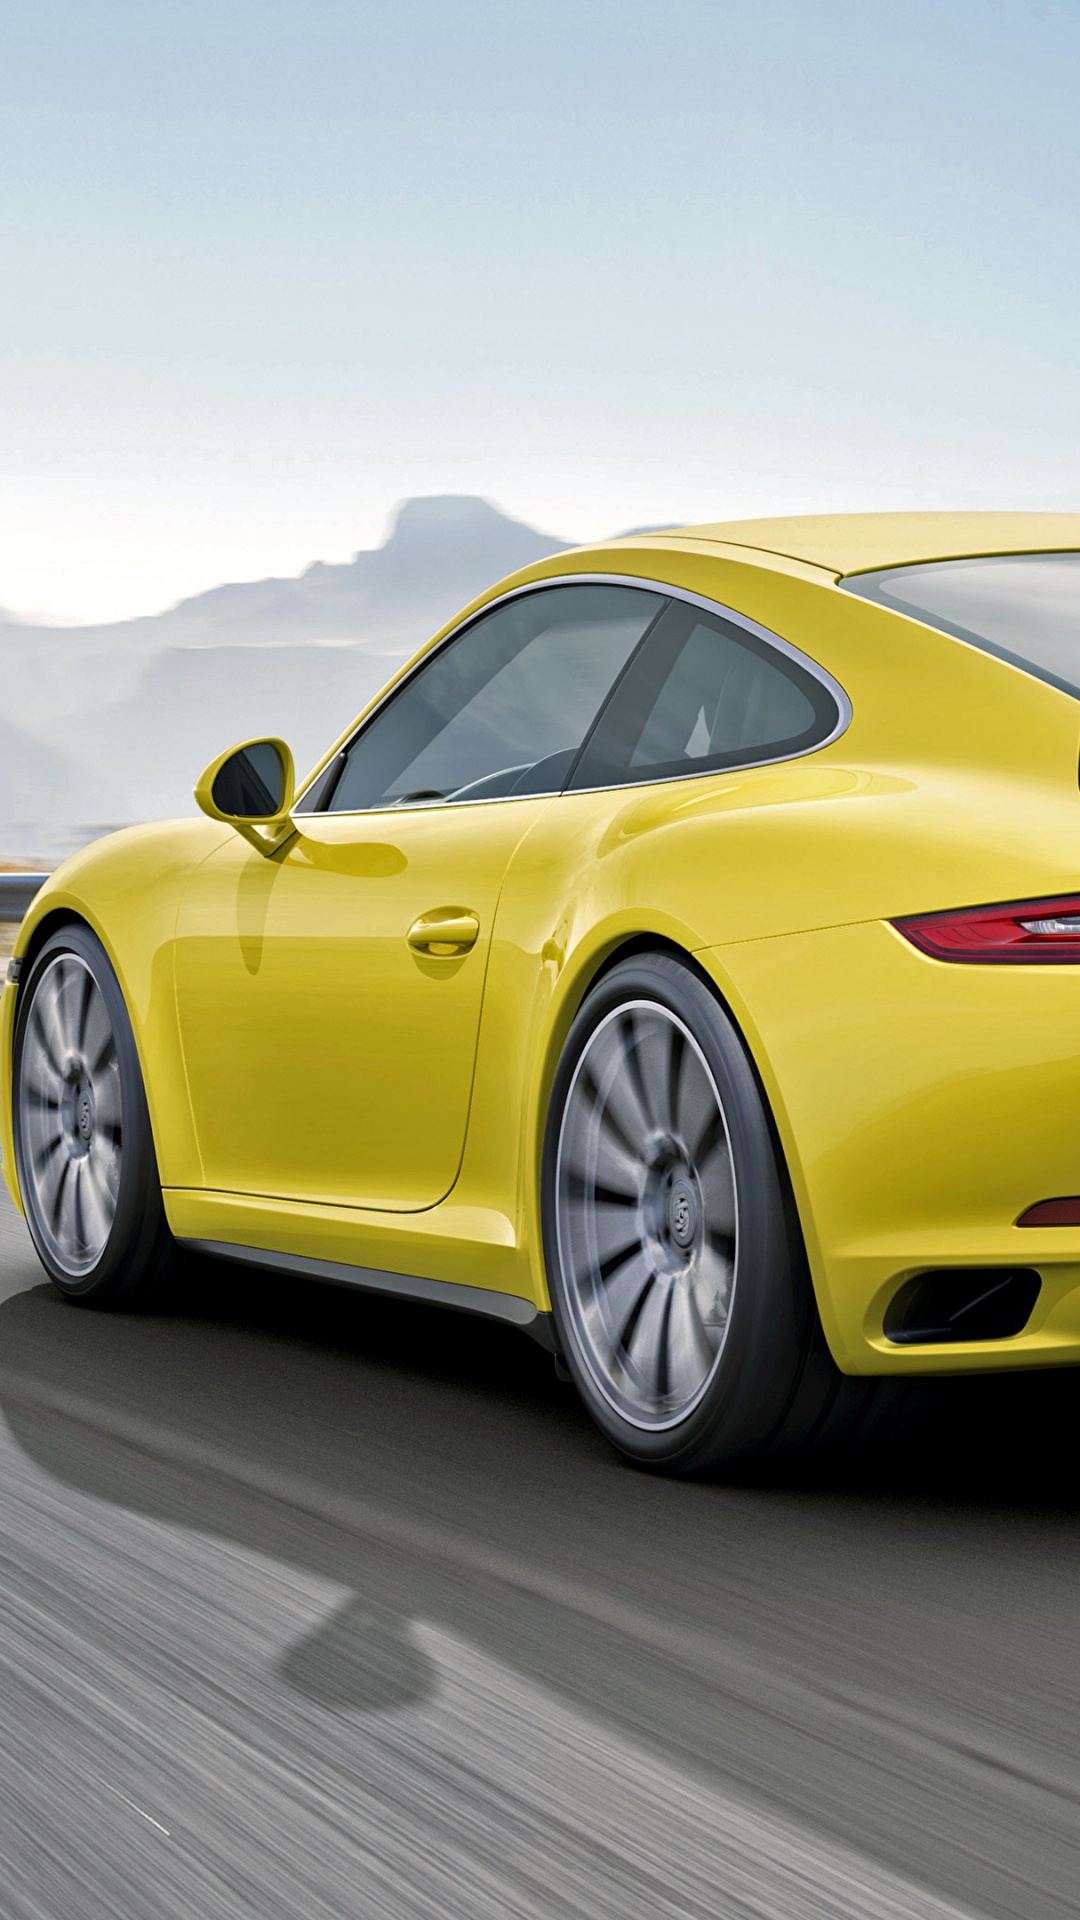 Porsche 911 Amarillo en la Carretera Durante el Día. Wallpaper in 1080x1920 Resolution